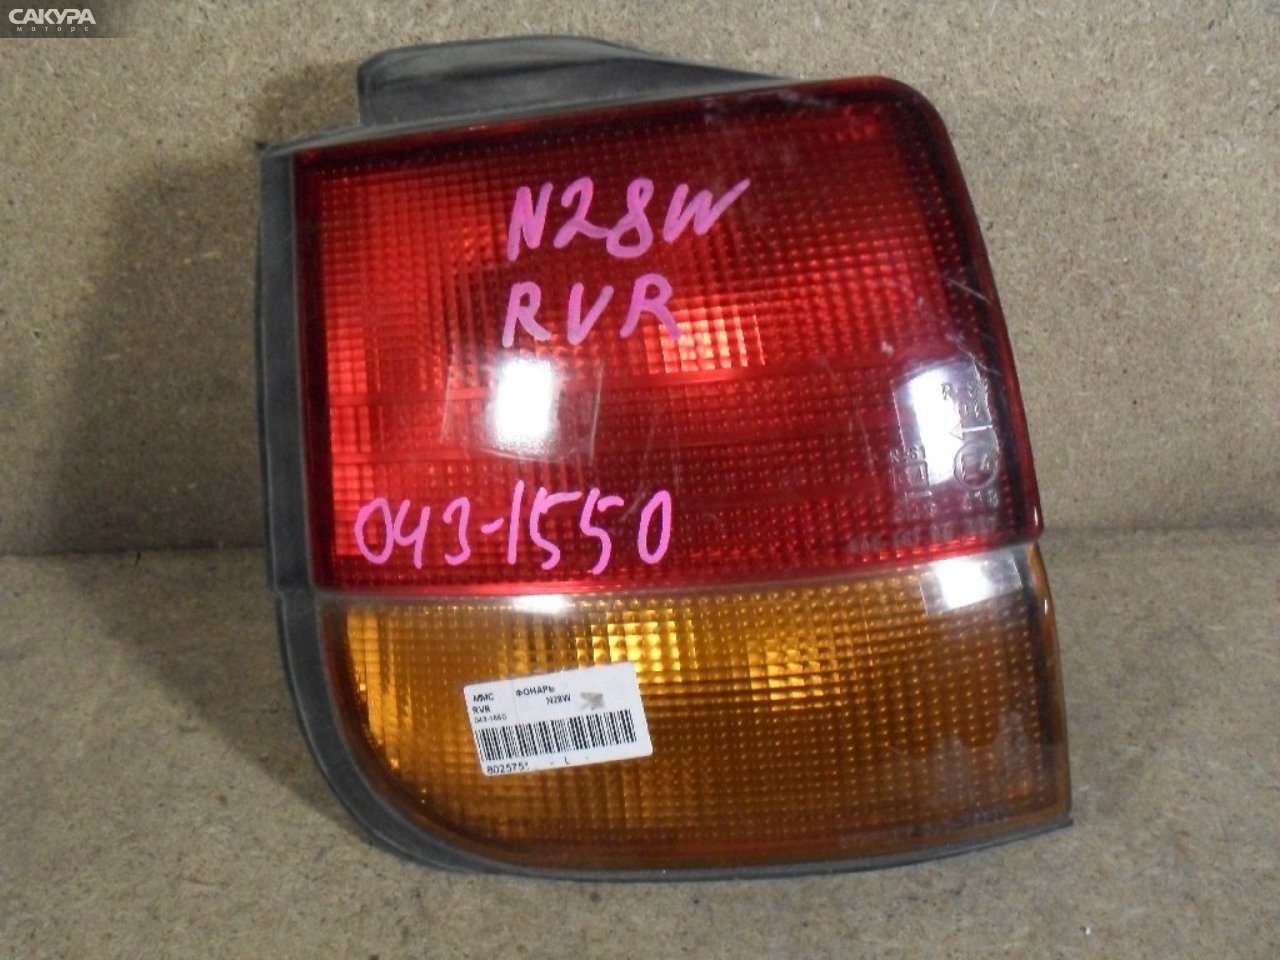 Фонарь стоп-сигнала левый Mitsubishi RVR N28W 043-1550: купить в Сакура Абакан.